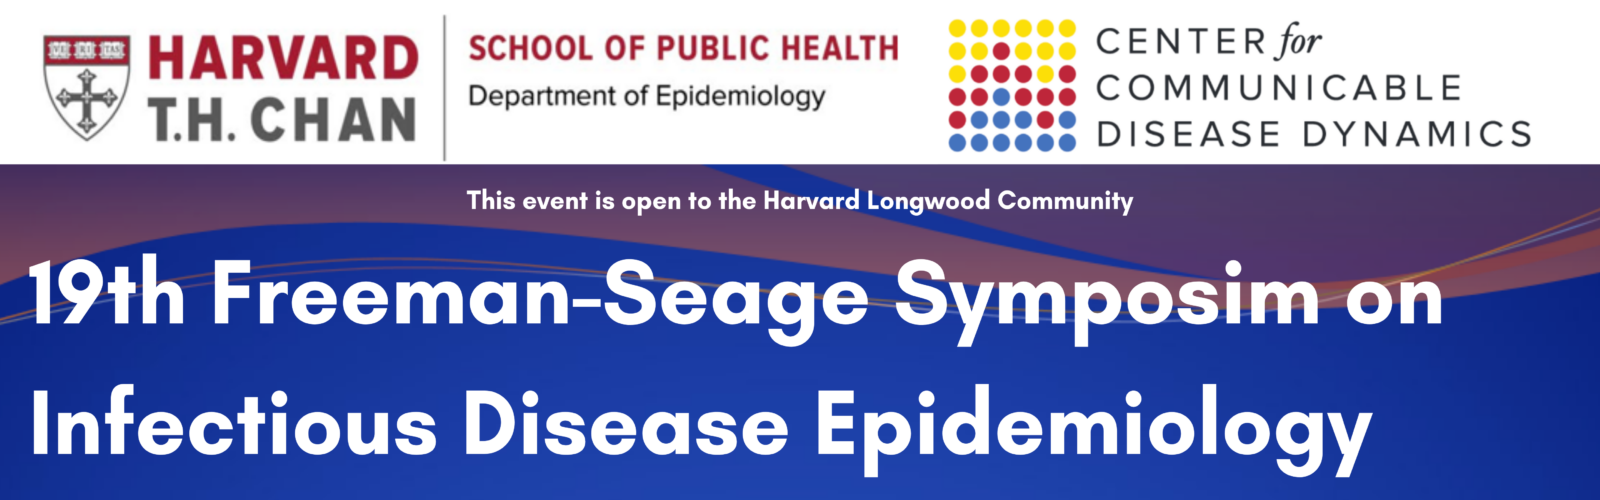 19th Freeman-Seage Symposium on Infectious Disease Epidemiology